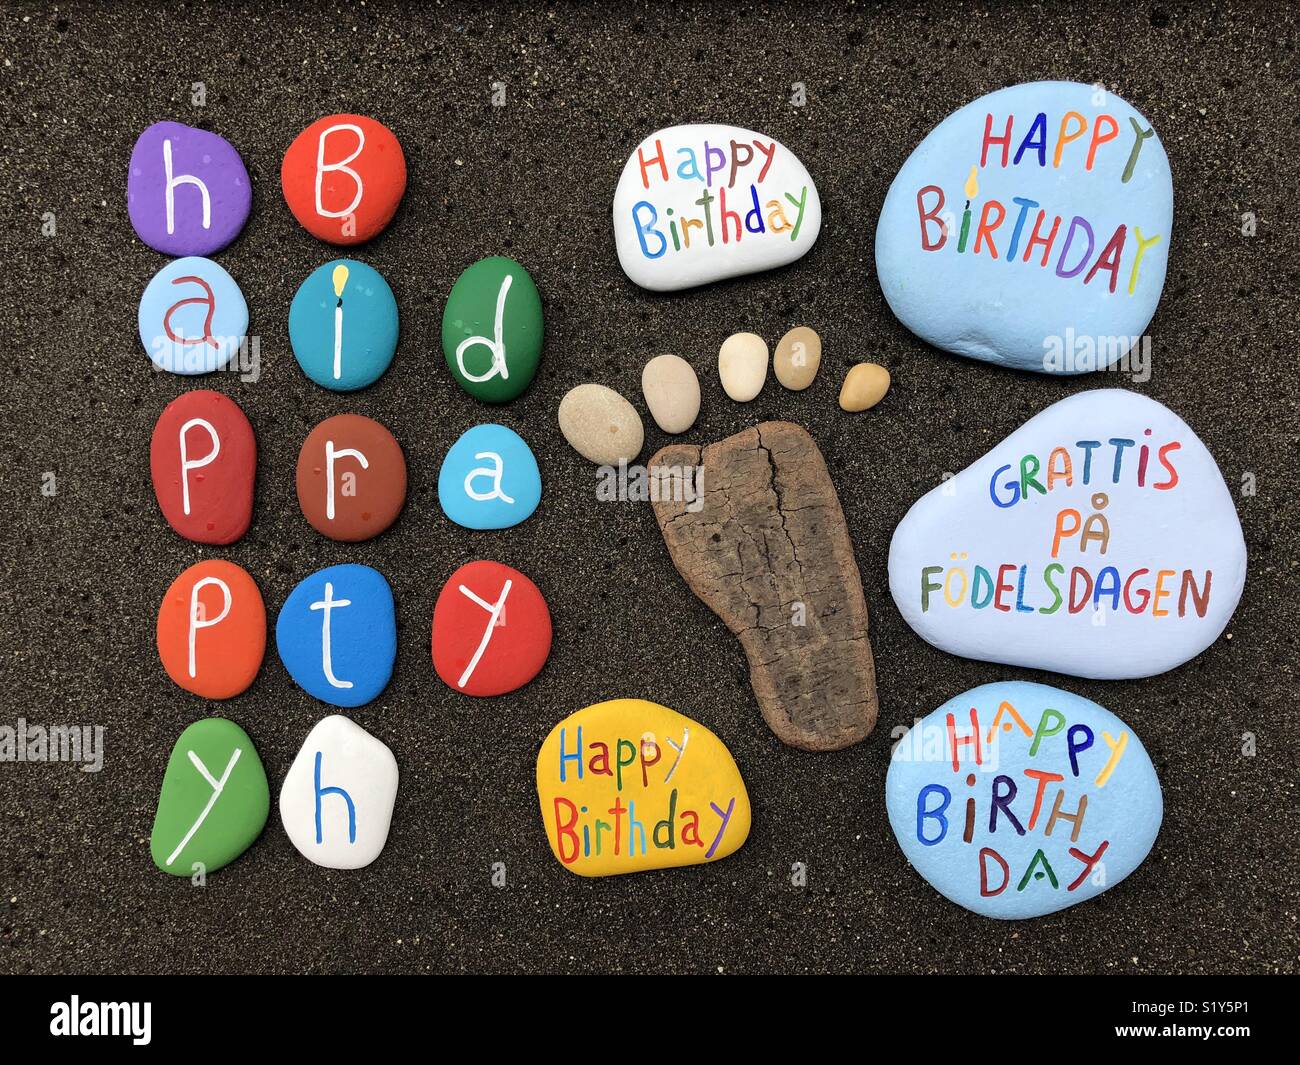 Herzlichen Glückwunsch zum Geburtstag lustig bunten Steinen Zusammensetzung  über schwarzen vulkanischen Sand Stockfotografie - Alamy